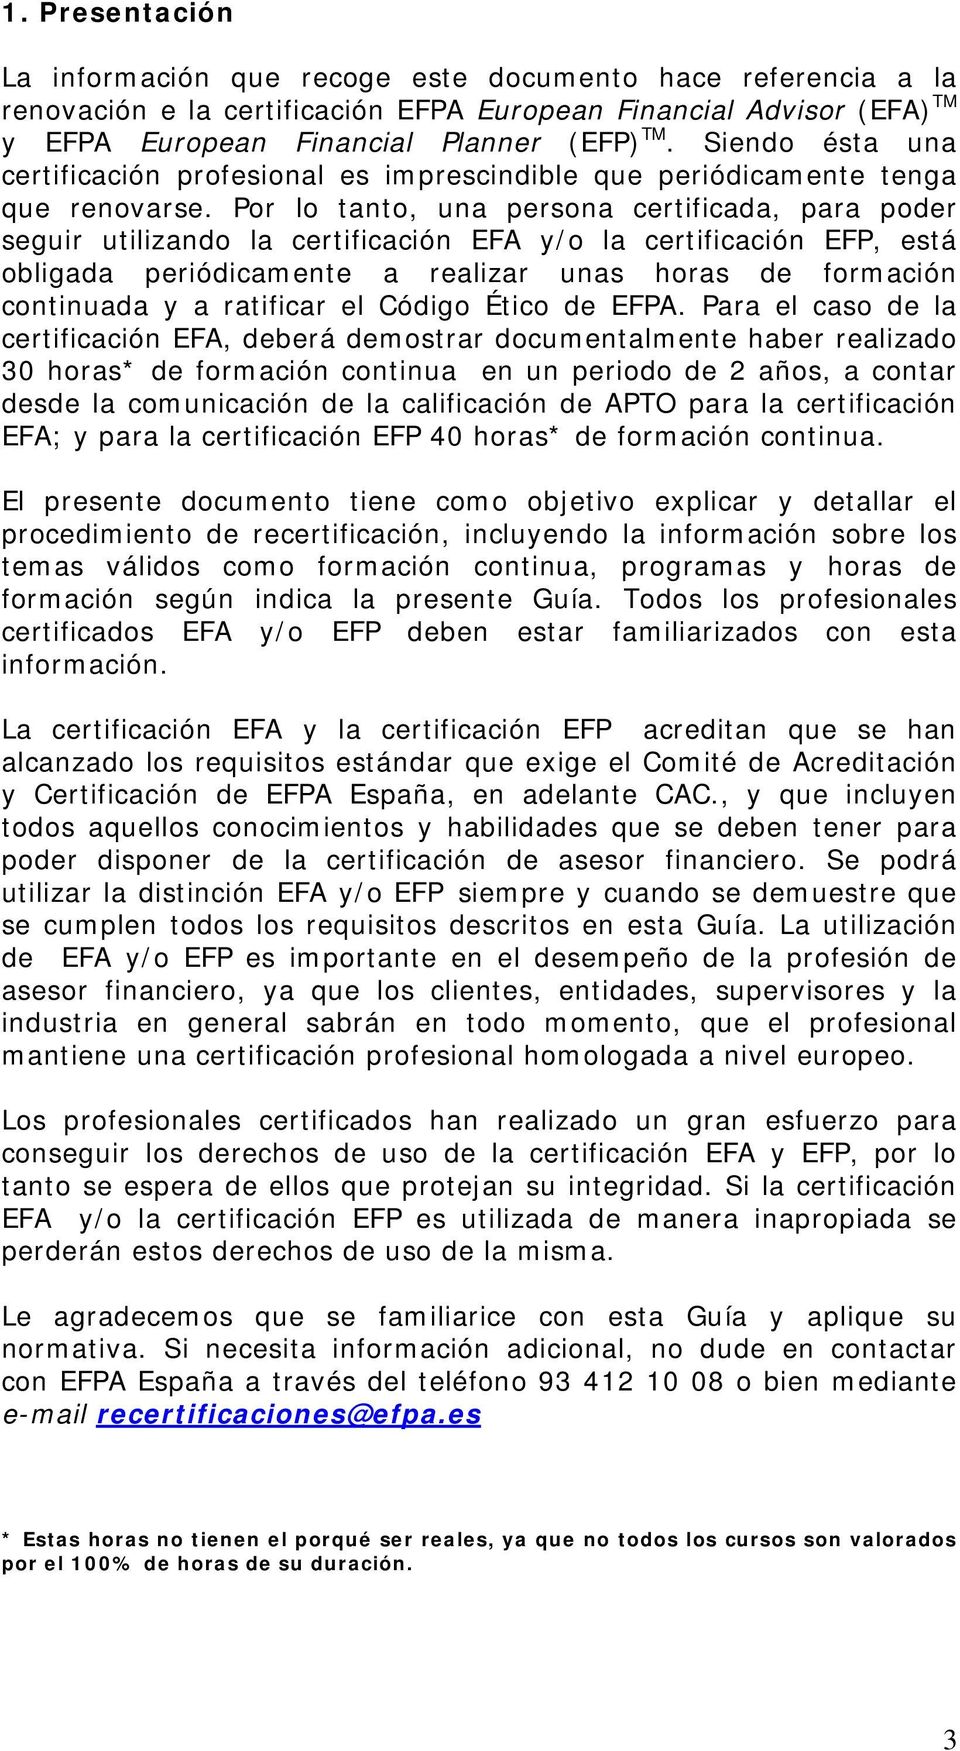 Por lo tanto, una persona certificada, para poder seguir utilizando la certificación EFA y/o la certificación EFP, está obligada periódicamente a realizar unas horas de formación continuada y a